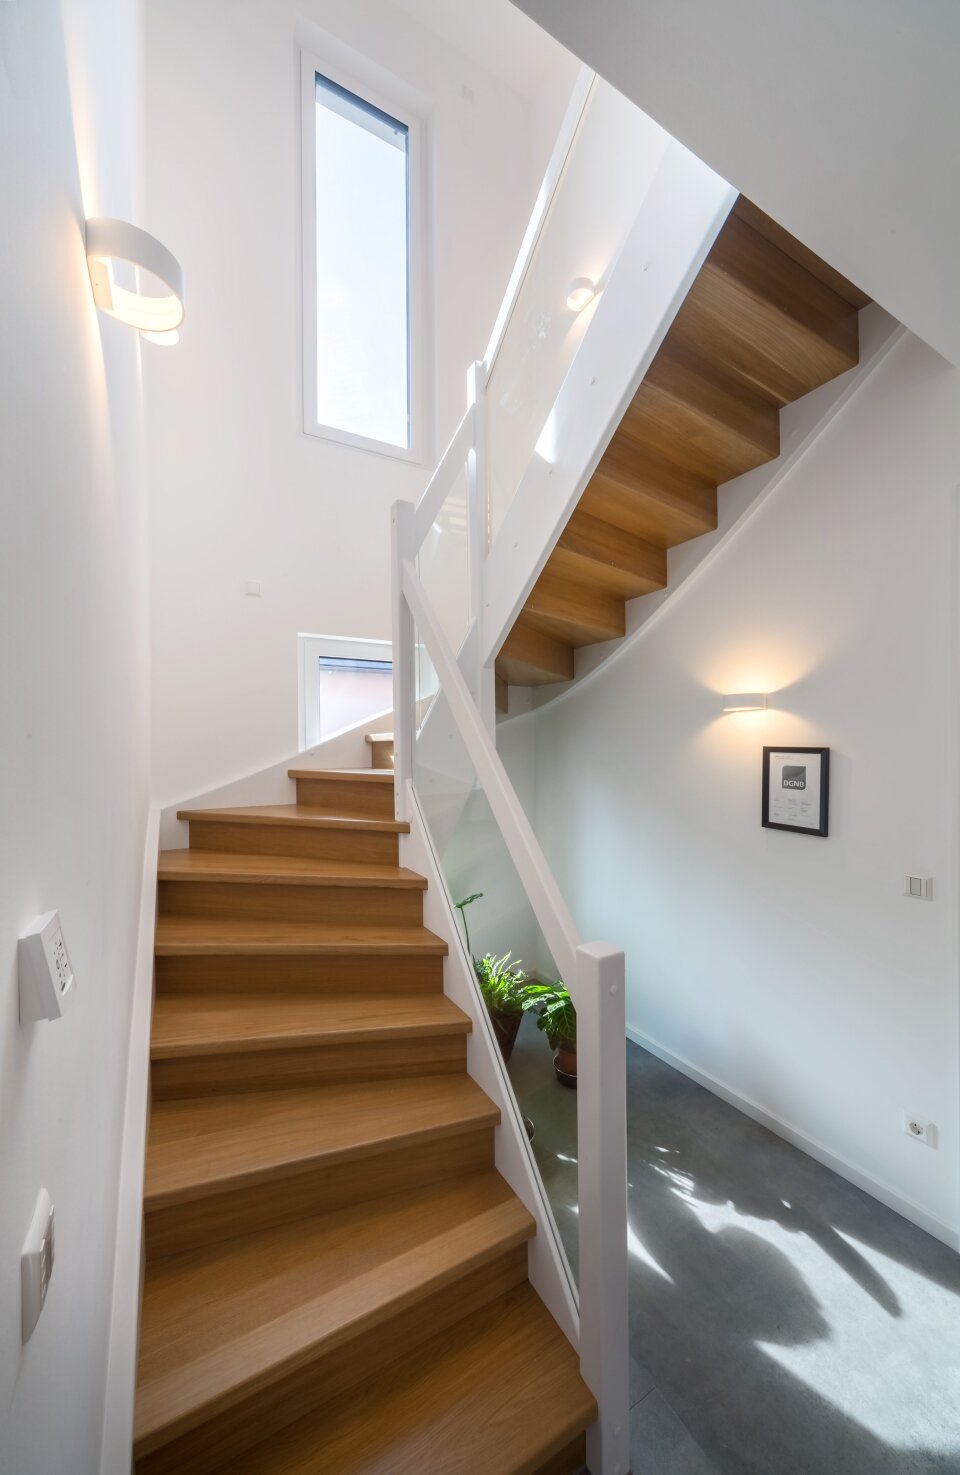 Treppe im Holzdesign